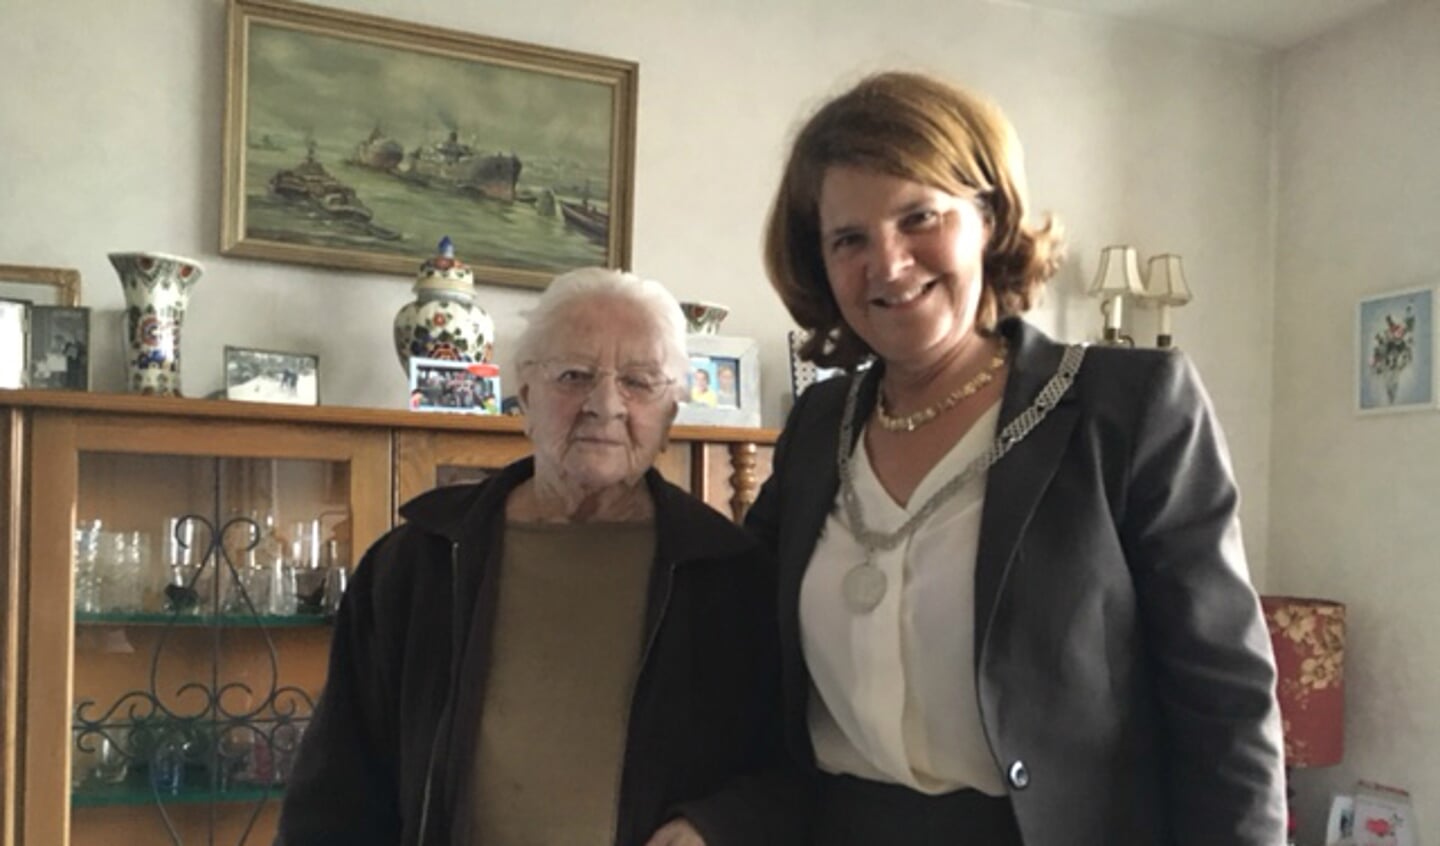 Twee dagen later ging de burgemeester langs bij mevrouw Pot, om ook haar te feliciteren met haar 101e verjaardag.